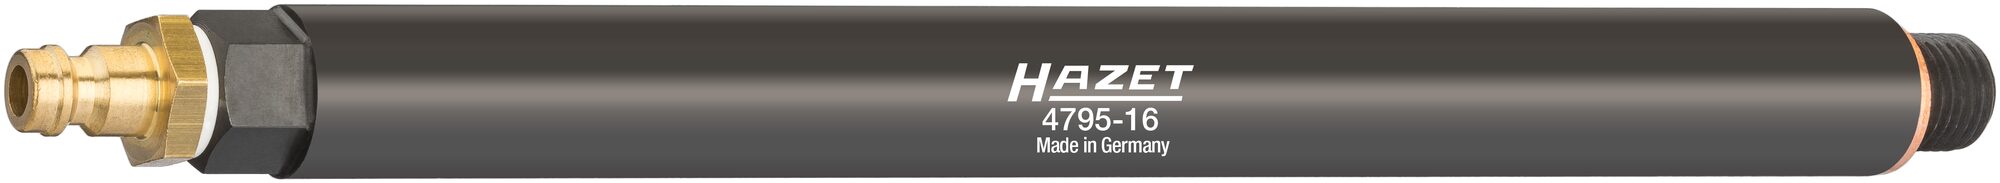 HAZET Druckverlust-Tester 4795-16